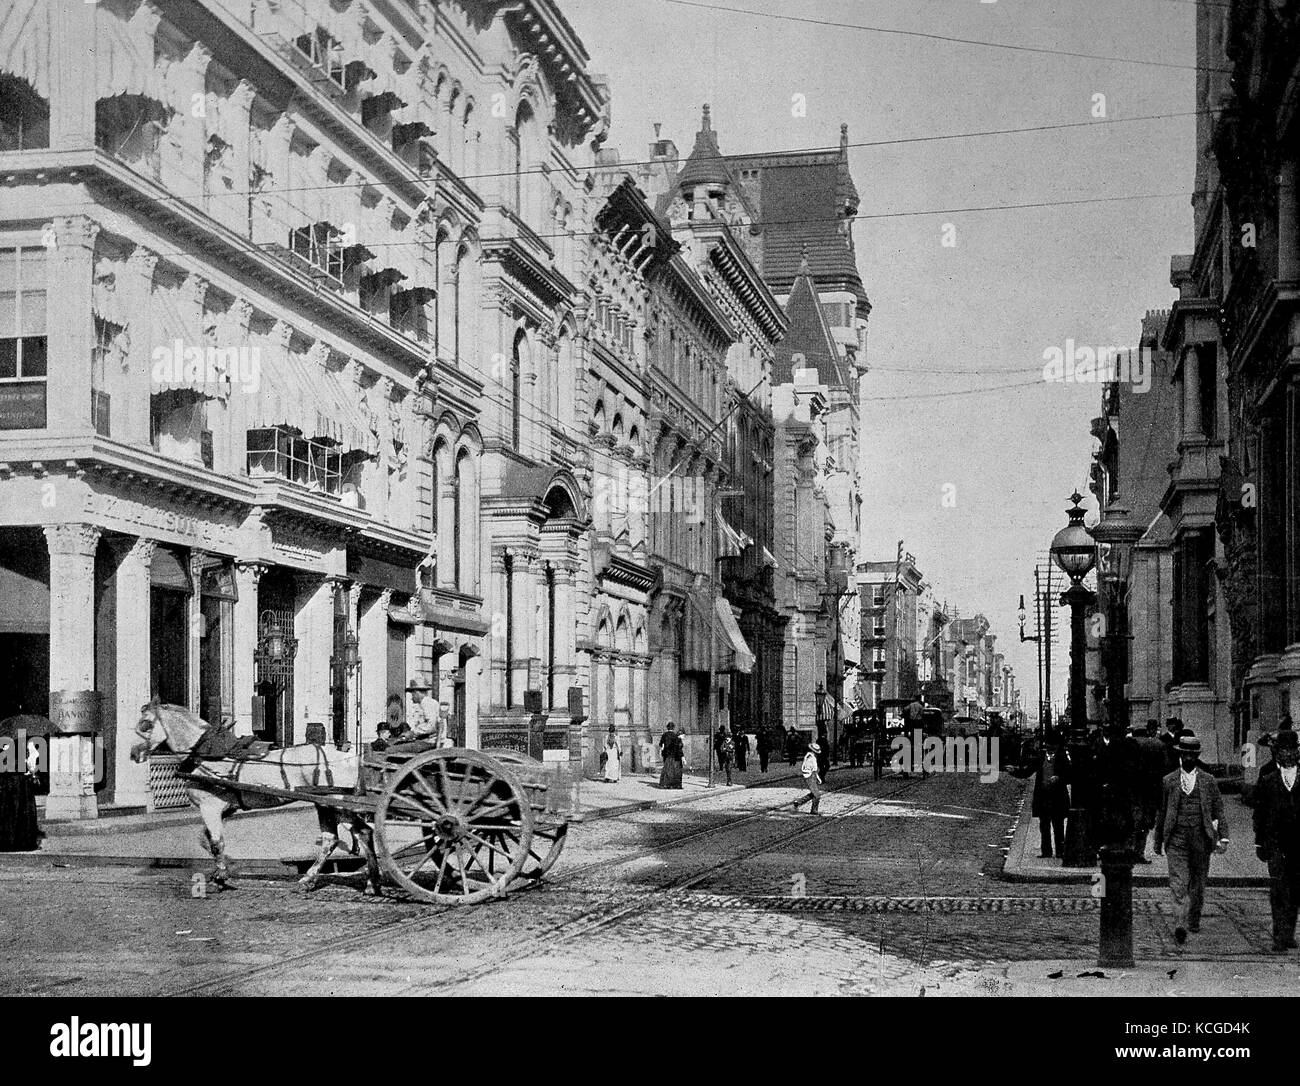 États-unis d'Amérique, scène de rue, Chestnut Street dans la ville de Philadelphia, Pennsylvania State, amélioration numérique reproduction d'une photo historique de l'année 1899 (estimé) Banque D'Images